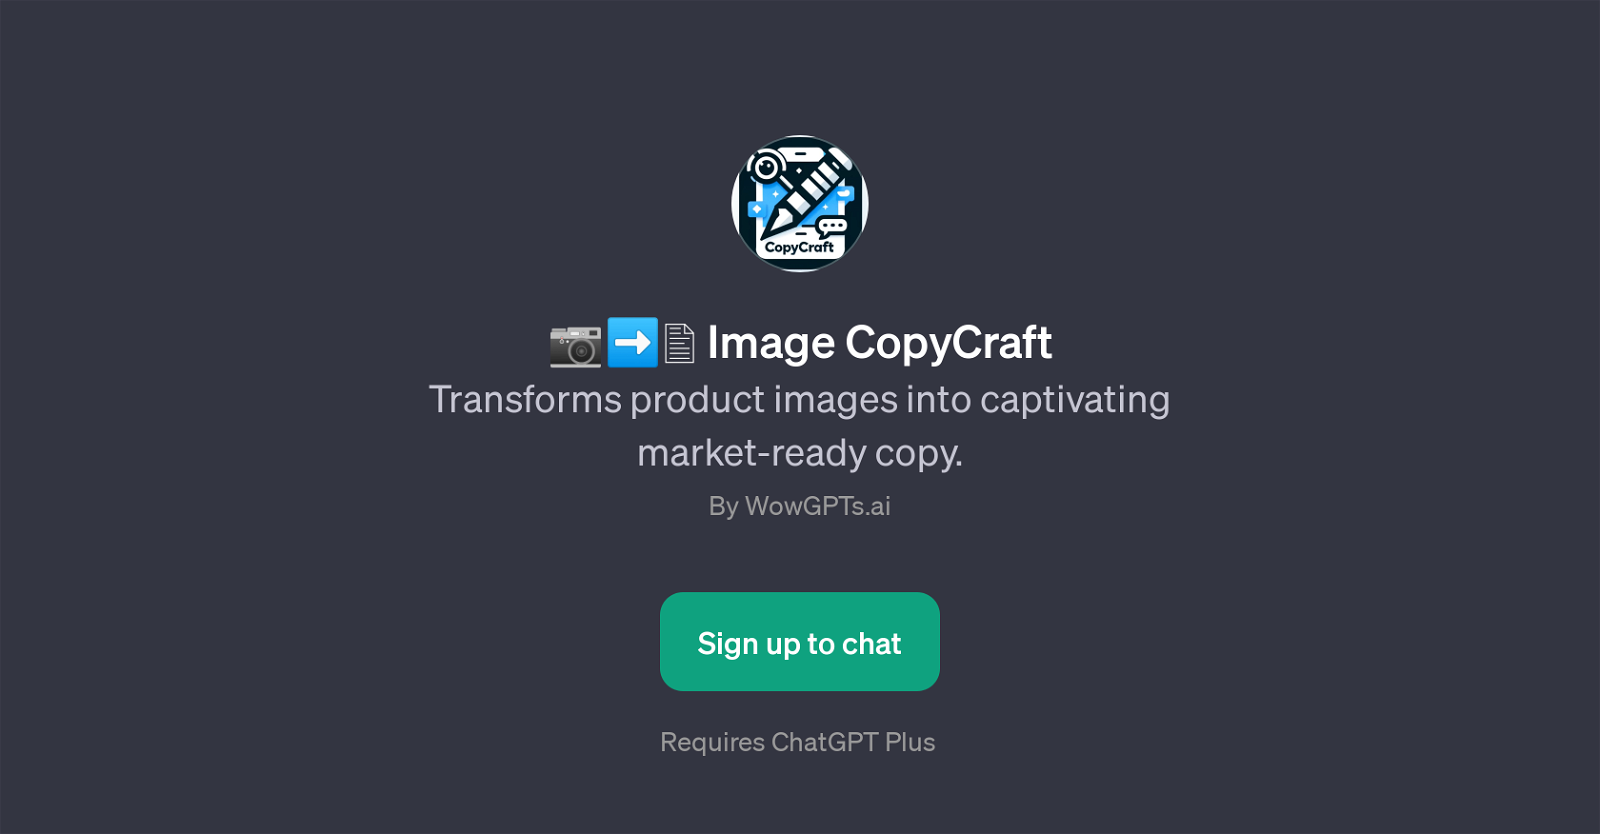 Image CopyCraft website